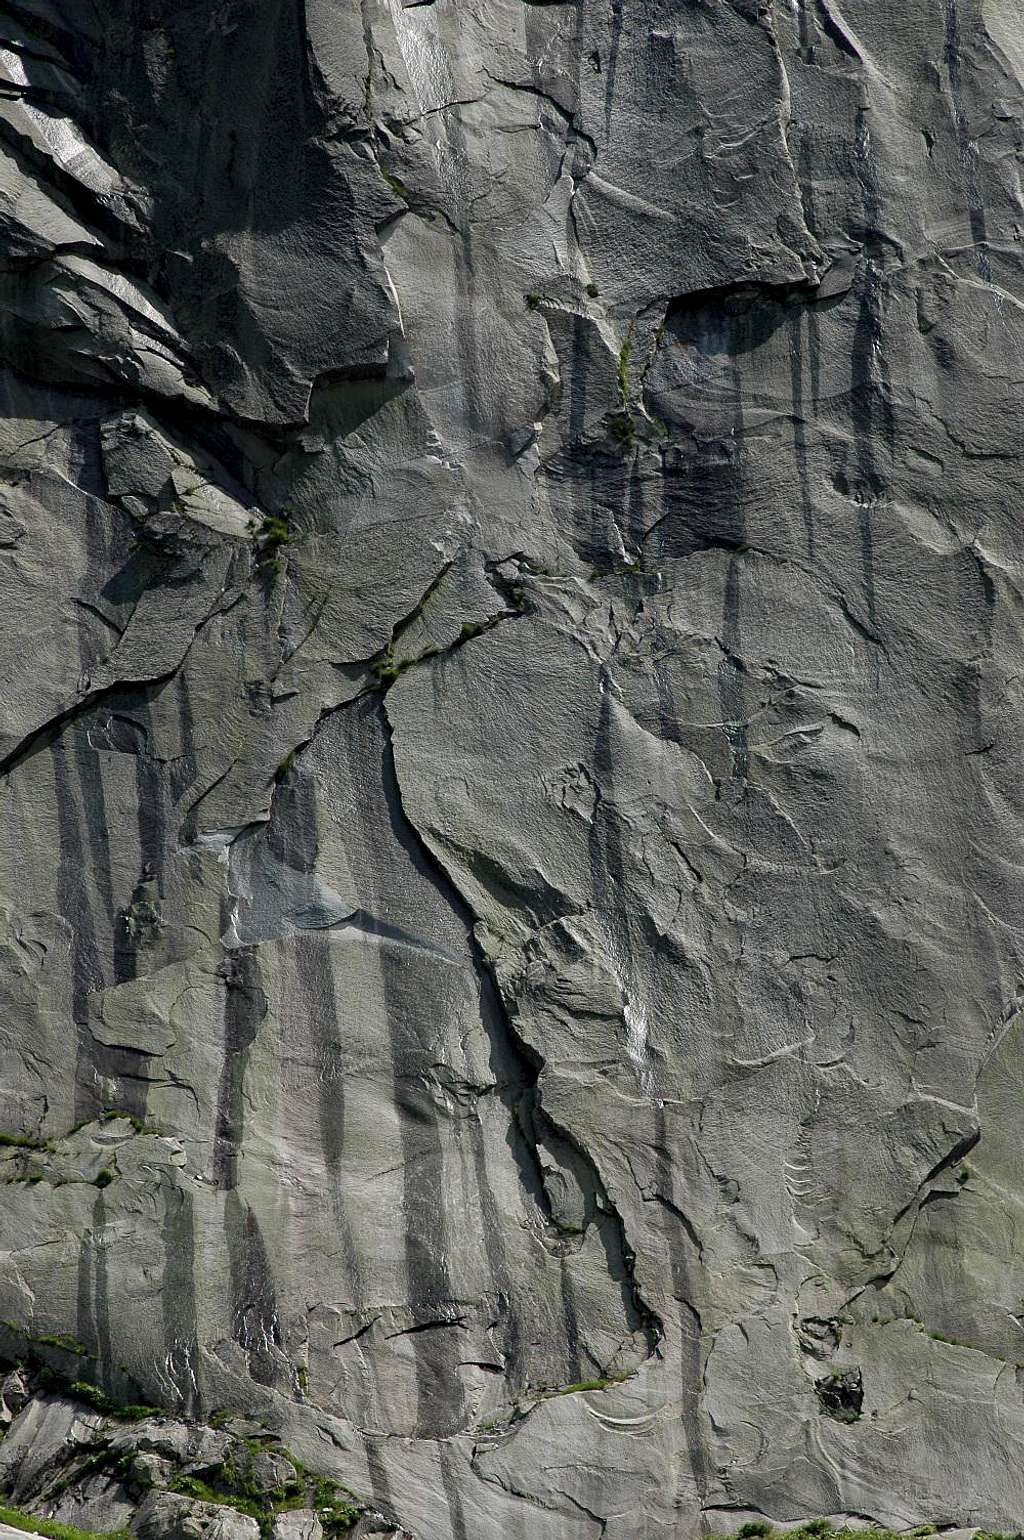 Aar valley granite